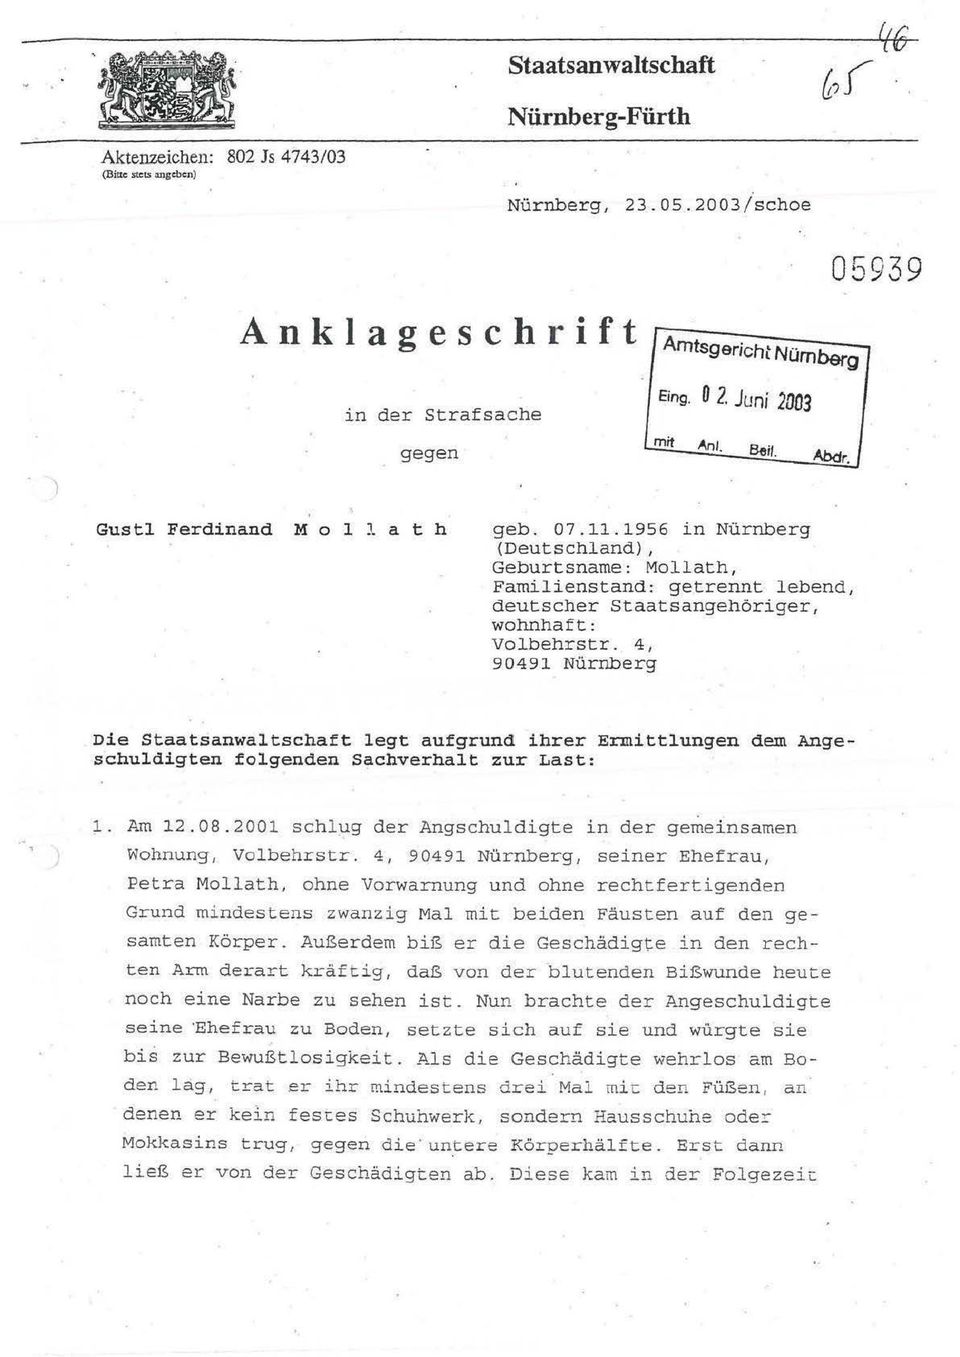 1956 in Nürnberg (Deutschland), Geburtsname: Mollath, Familienstand: getrennt lebend, deutscher Staatsangehöriger, wohnhaft: Volbehrstr.